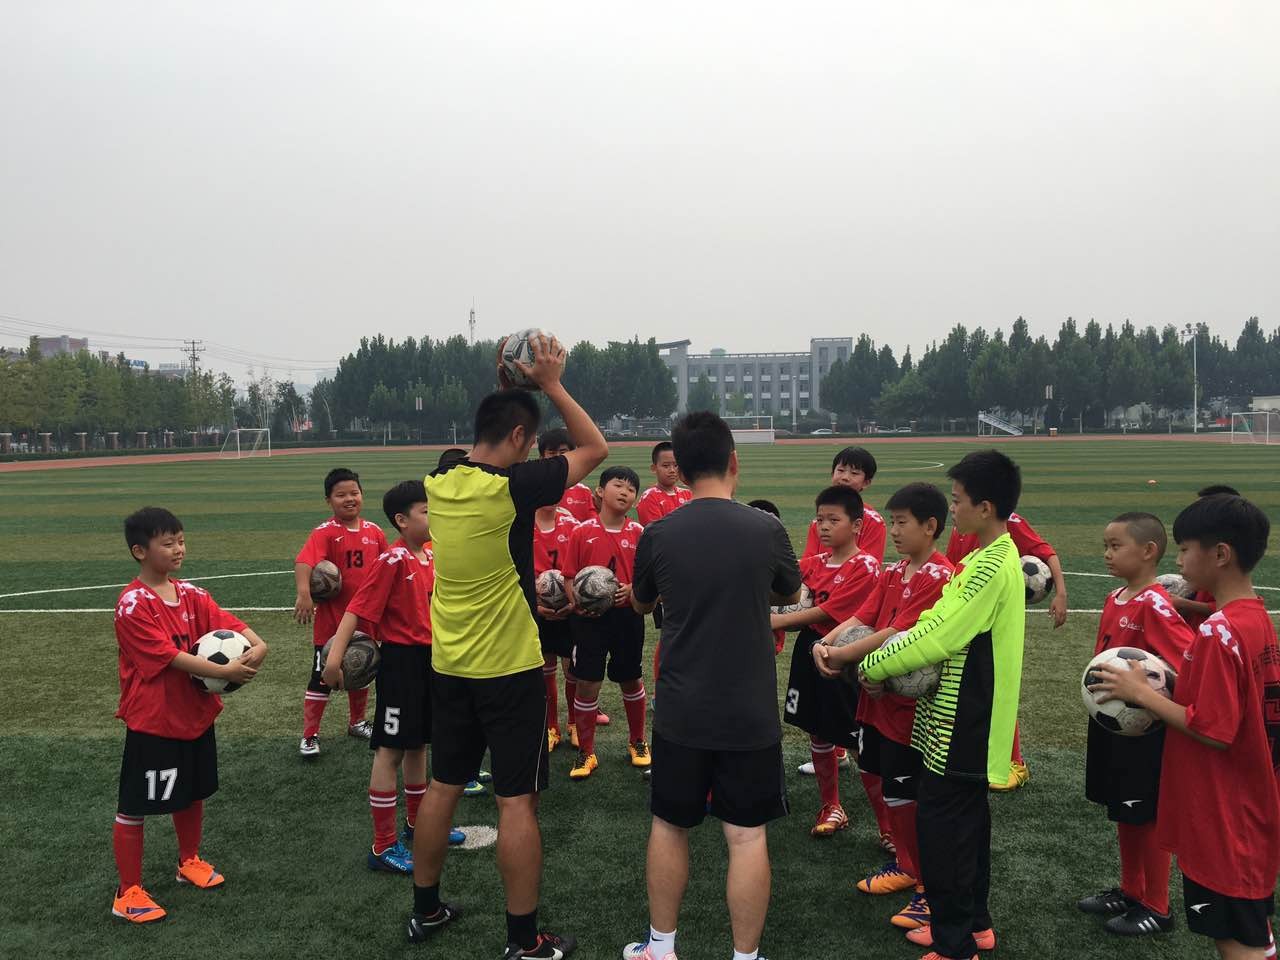 日本青训教练进校园 让孩子享受快乐足球 - 足